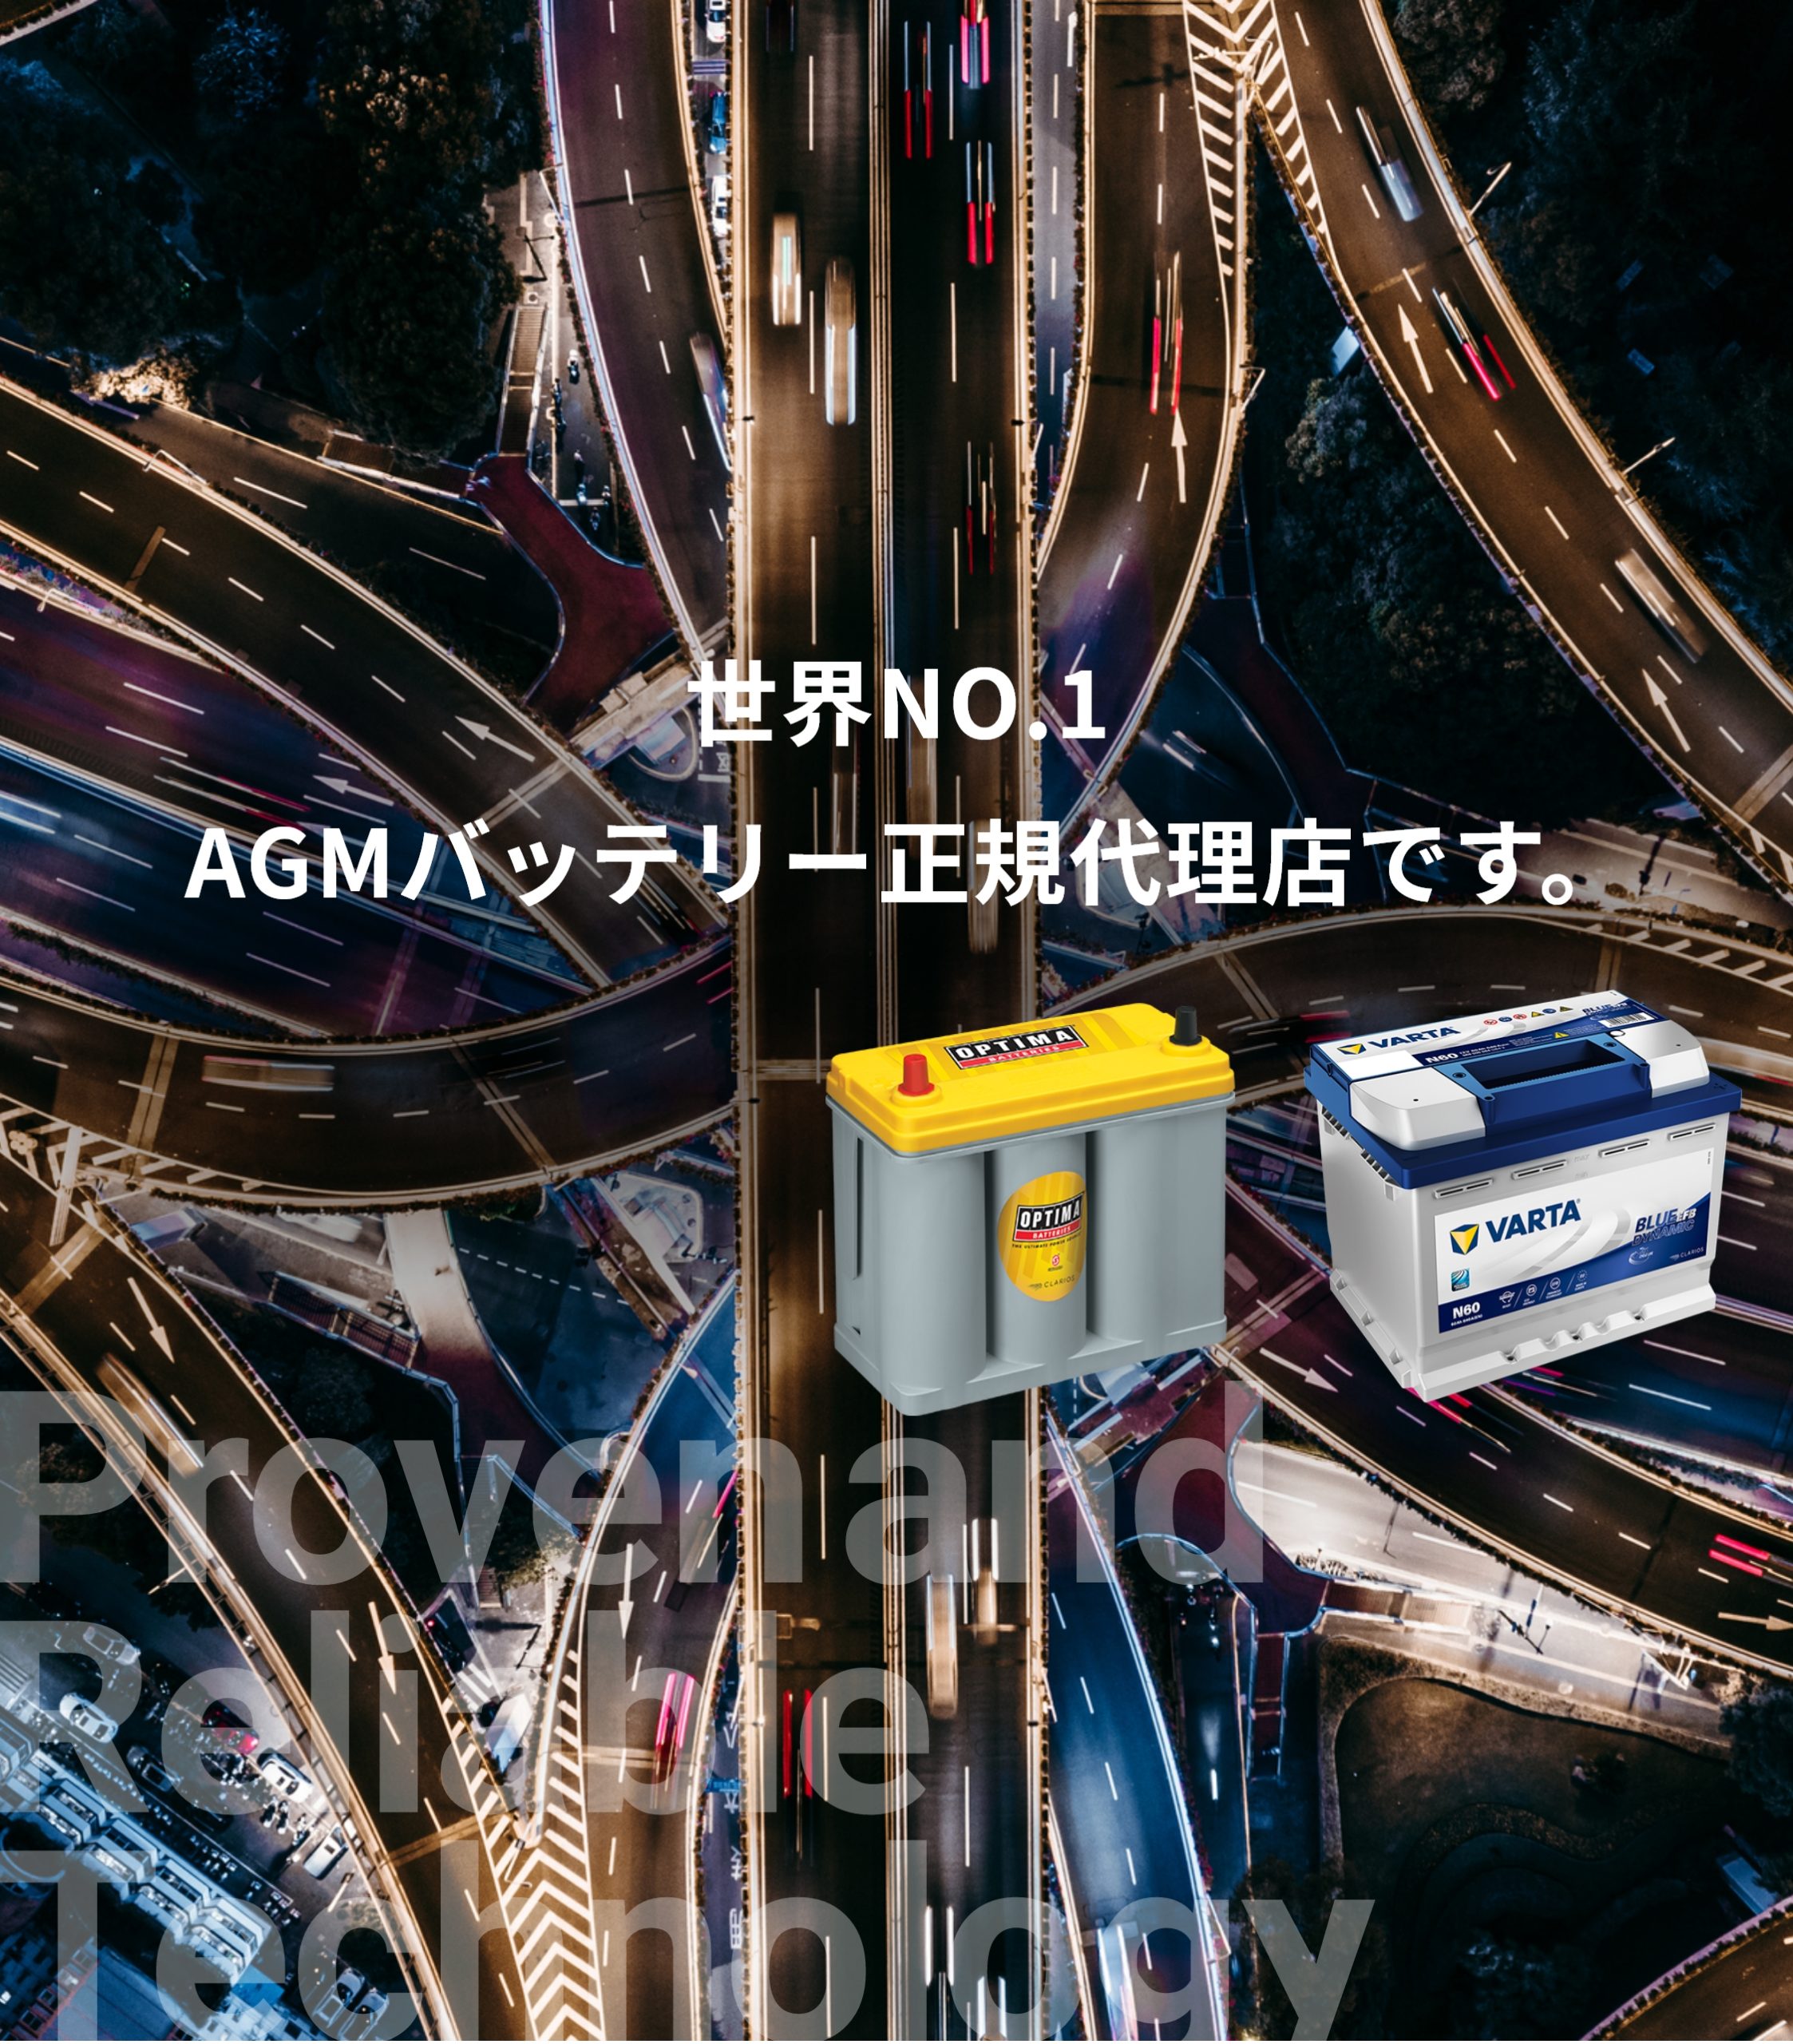 オプティマ 世界NO.1のAGMバッテリー☆オプティマ D1400S イエロートップ送料込み☆